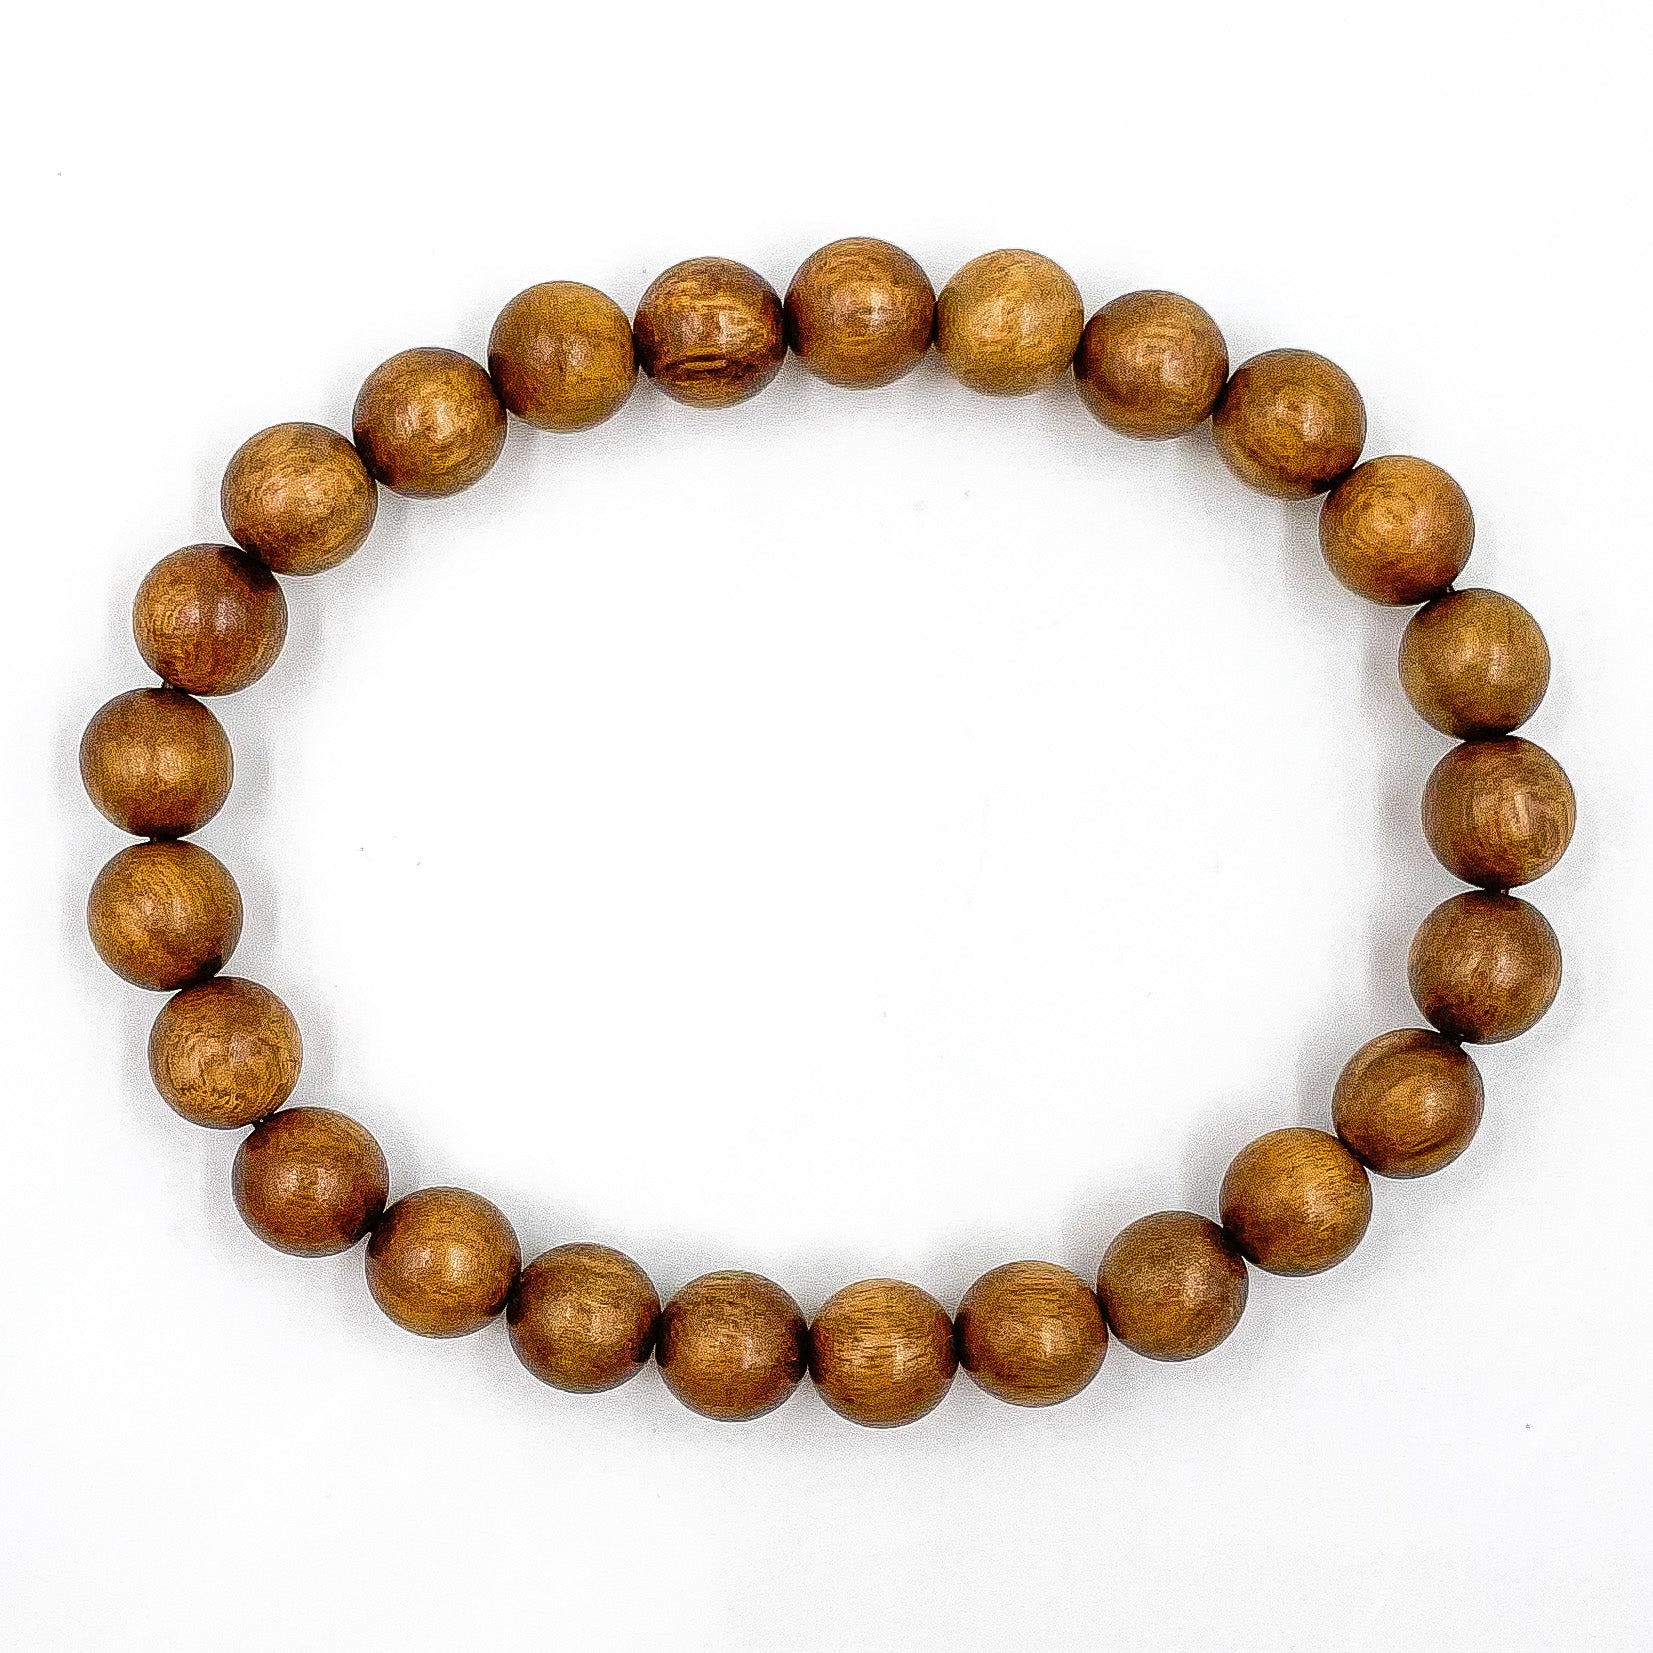 File:Japa mala (prayer beads) of Tulasi wood with 108 beads -  20040101-01.jpg - Wikipedia